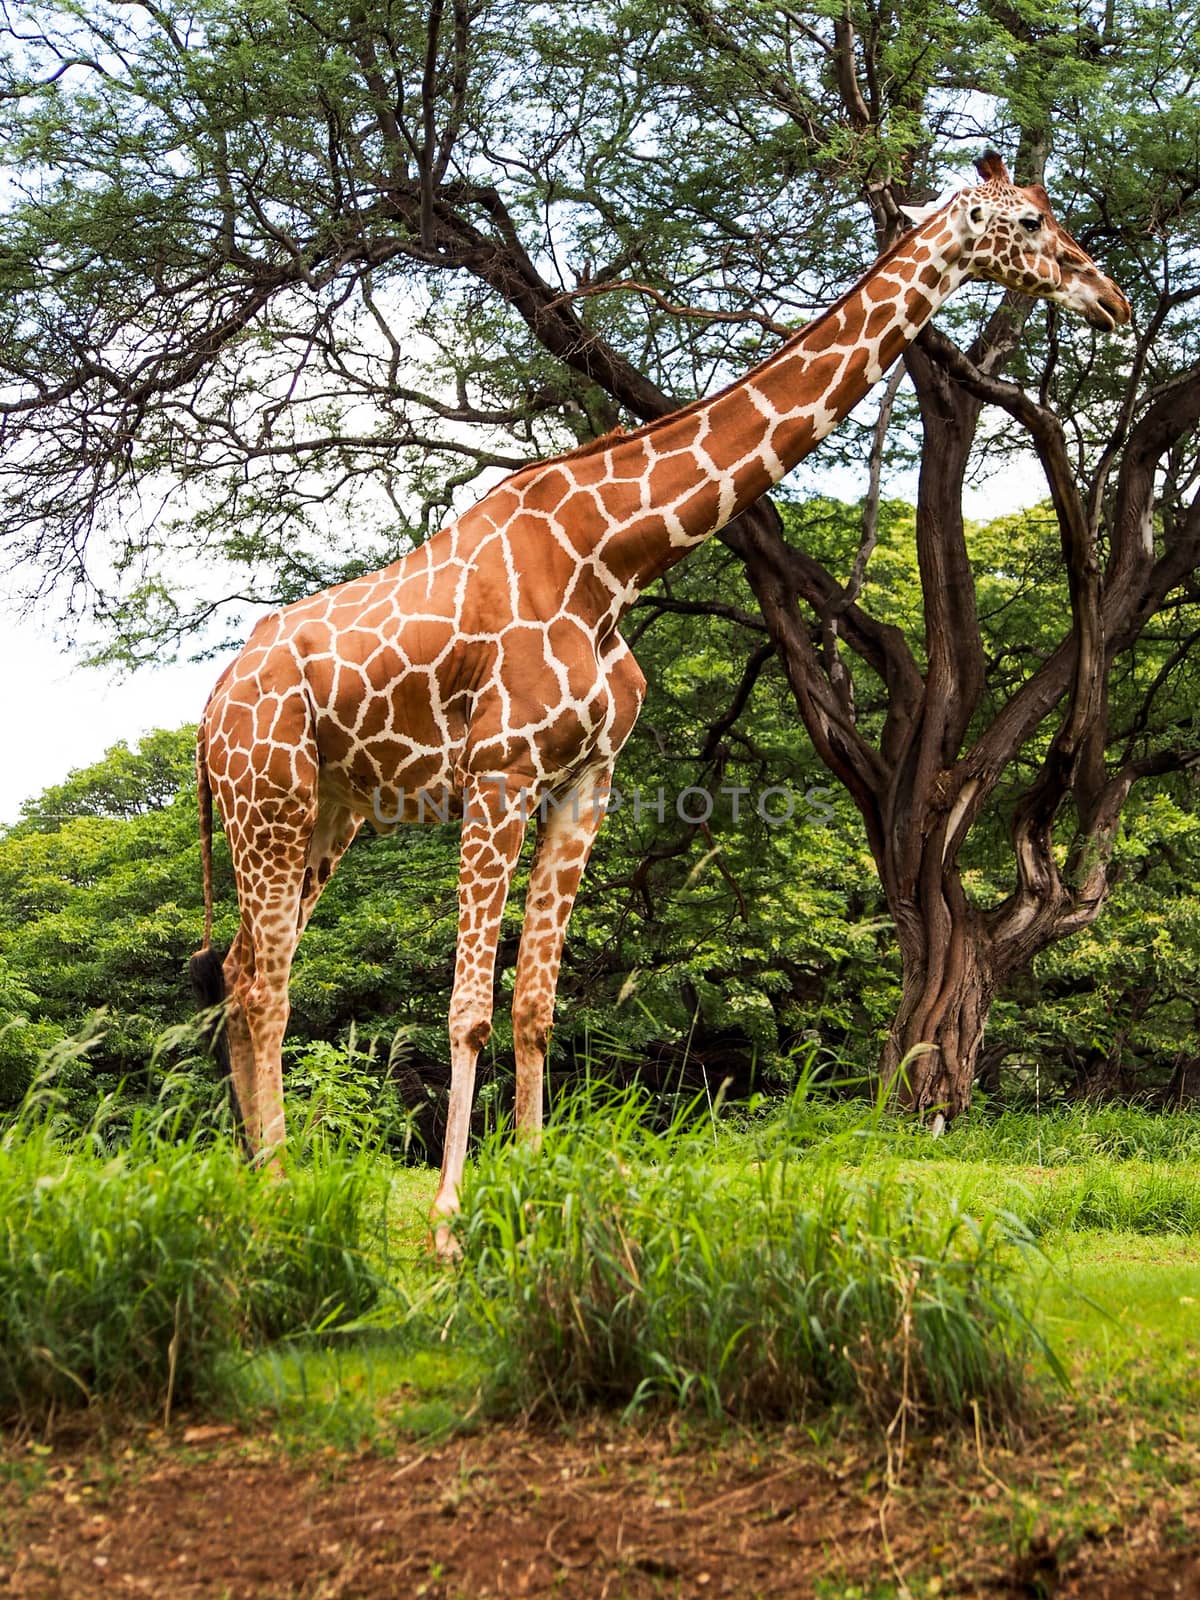 Giraffe Eating Leaves by NikkiGensert